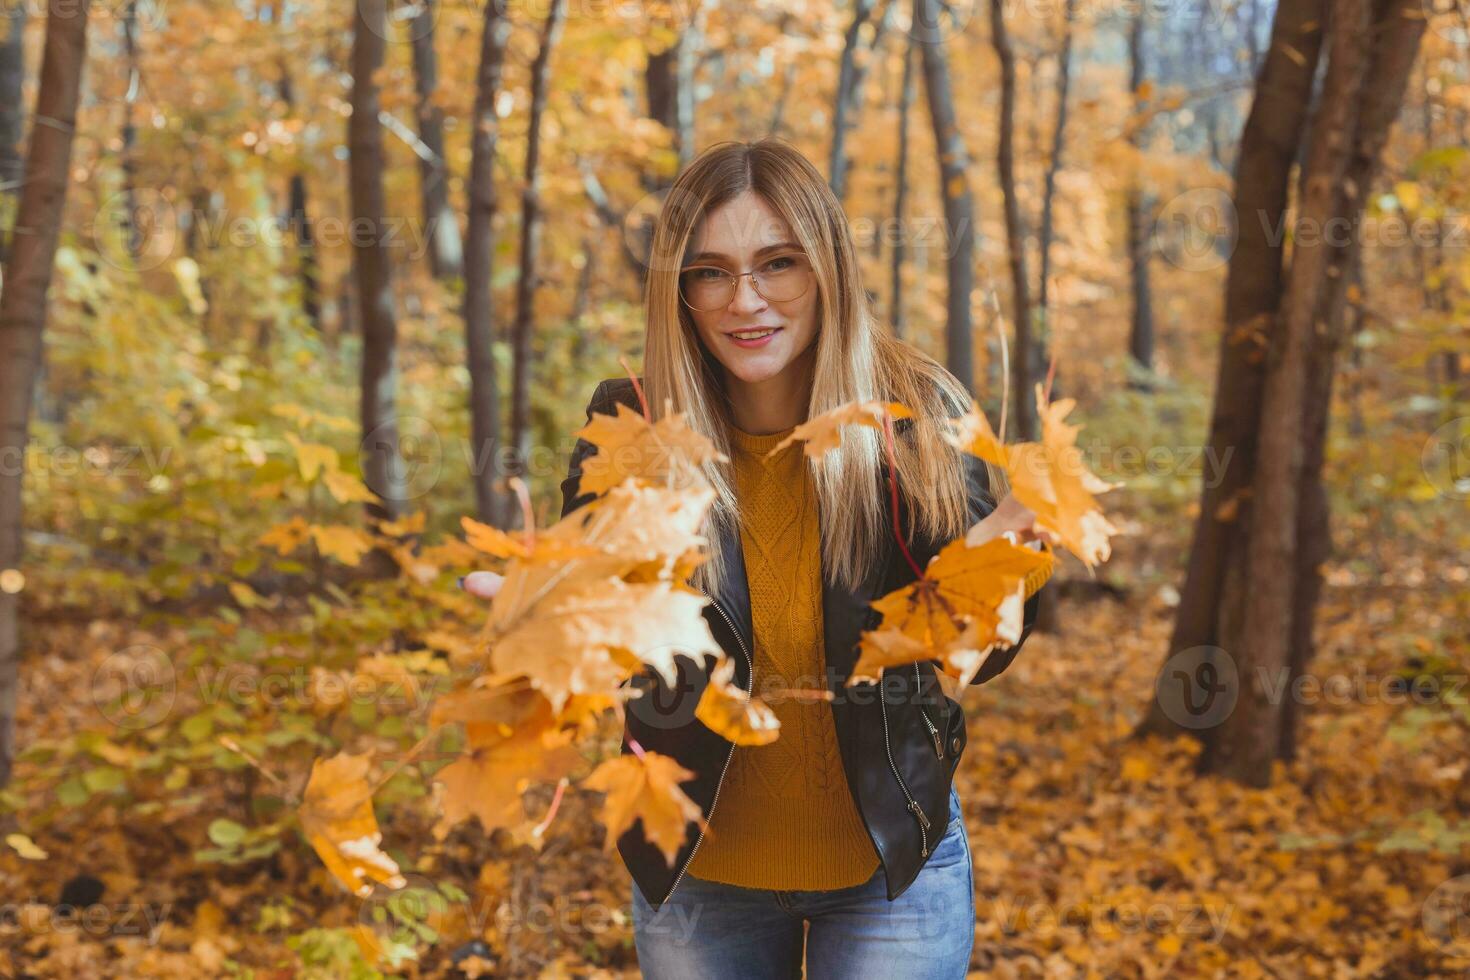 contento riendo joven mujer lanzamiento hojas en otoño parque. otoño temporada foto